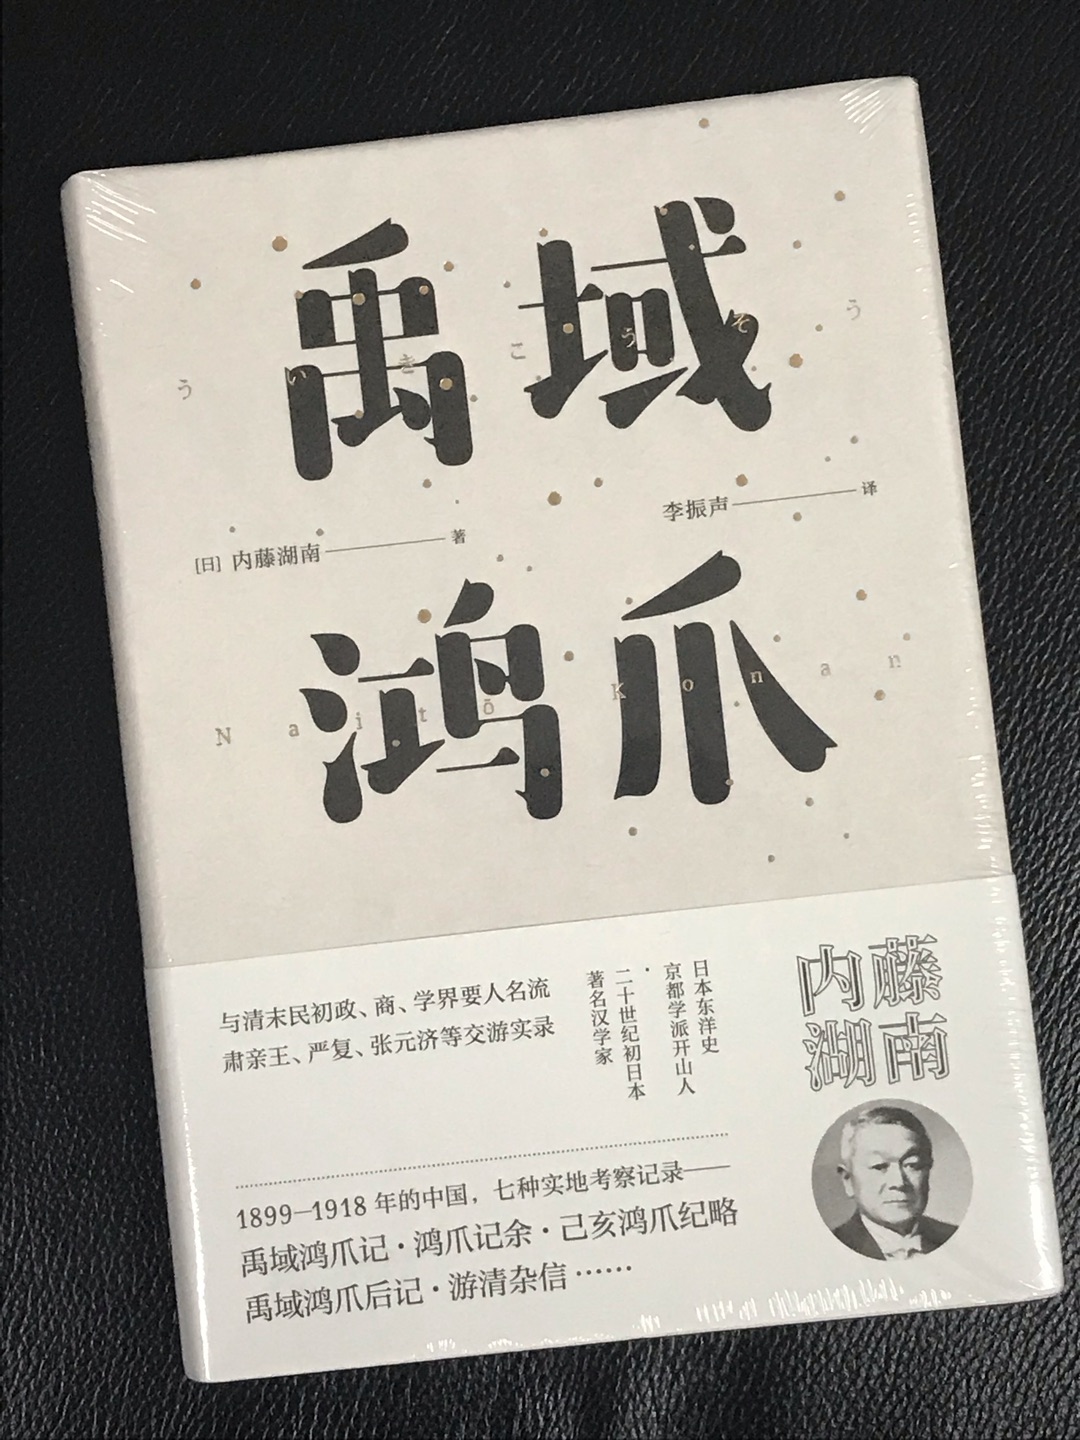 内藤湖南是~中国史研究领域京都学派创始人之一。《禹域鸿爪》是他于1899年到1918年之间，多次到中国访问、游览后，写作的七种考察记录的合集。